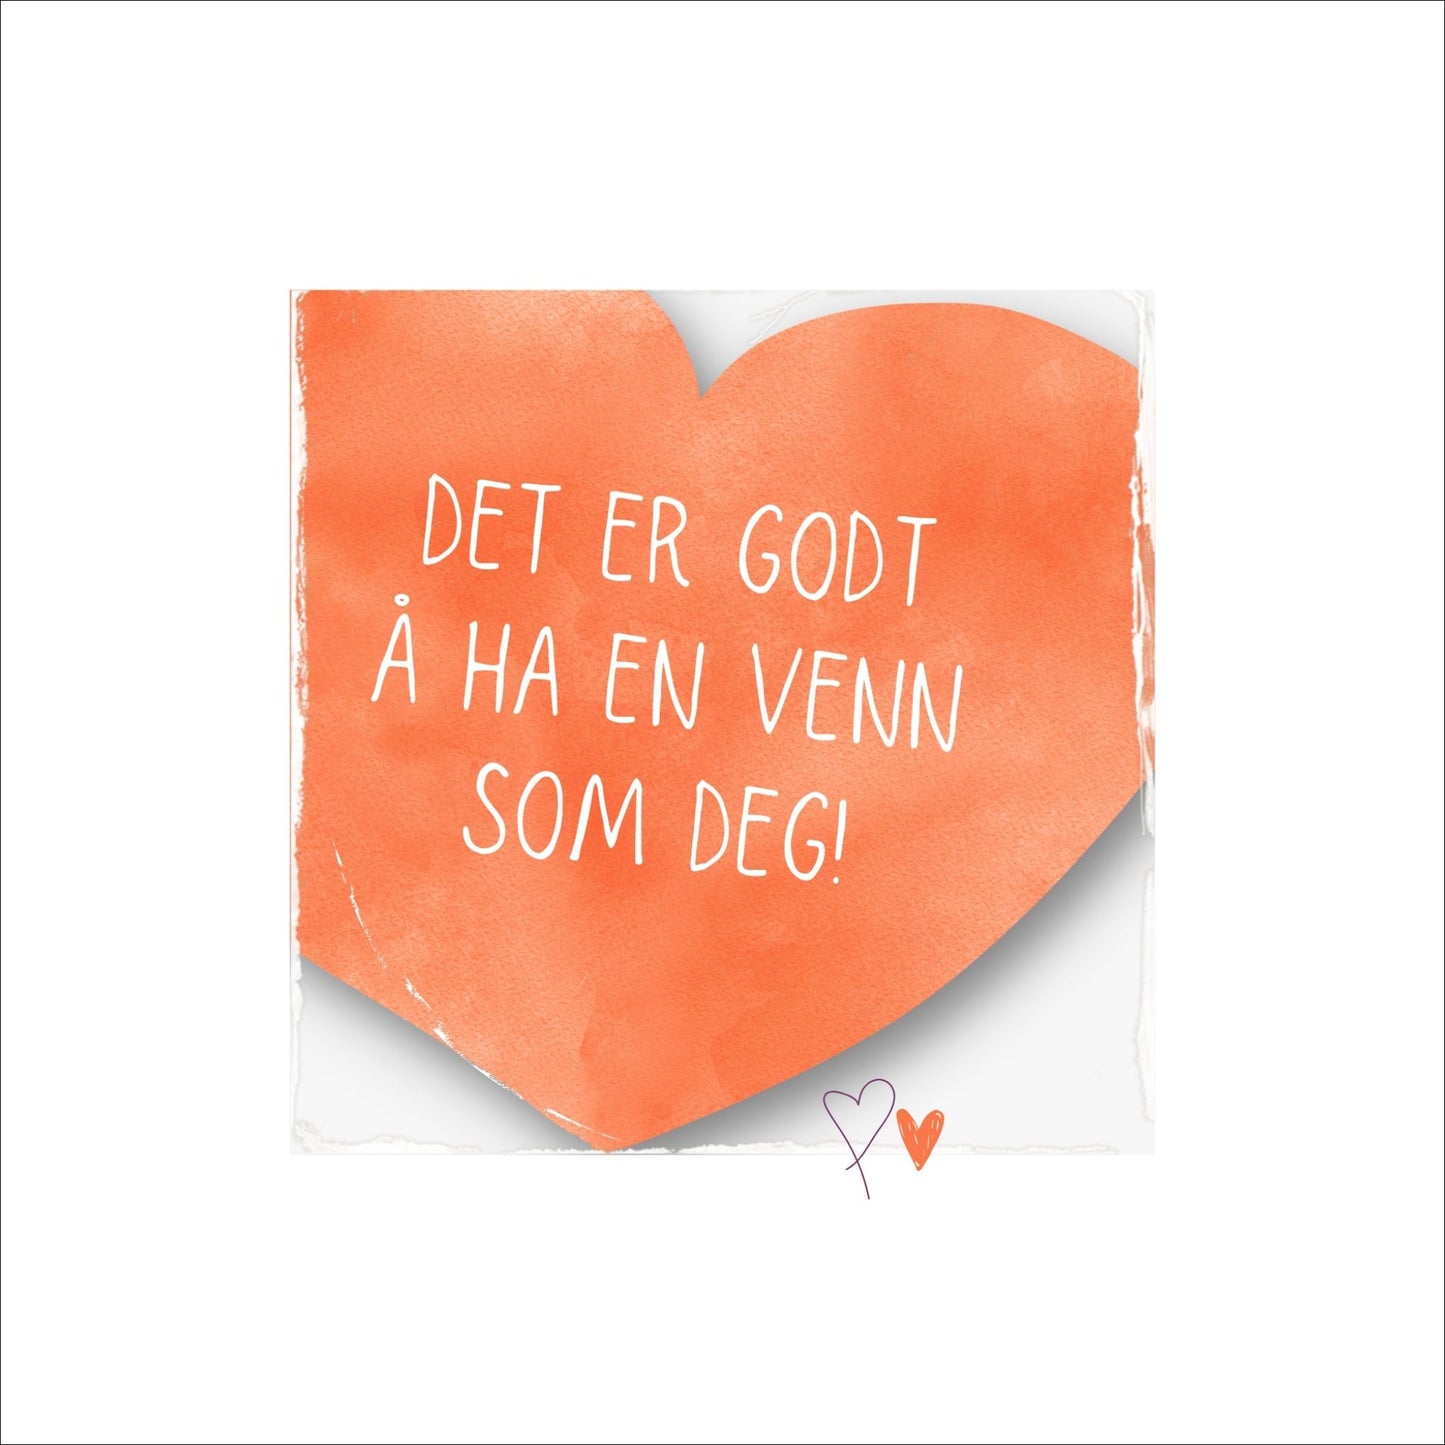 Plakat med oransje hjerte og tekst "Det er godt å ha en venn som deg". Med hvit kant på 4 cm. 